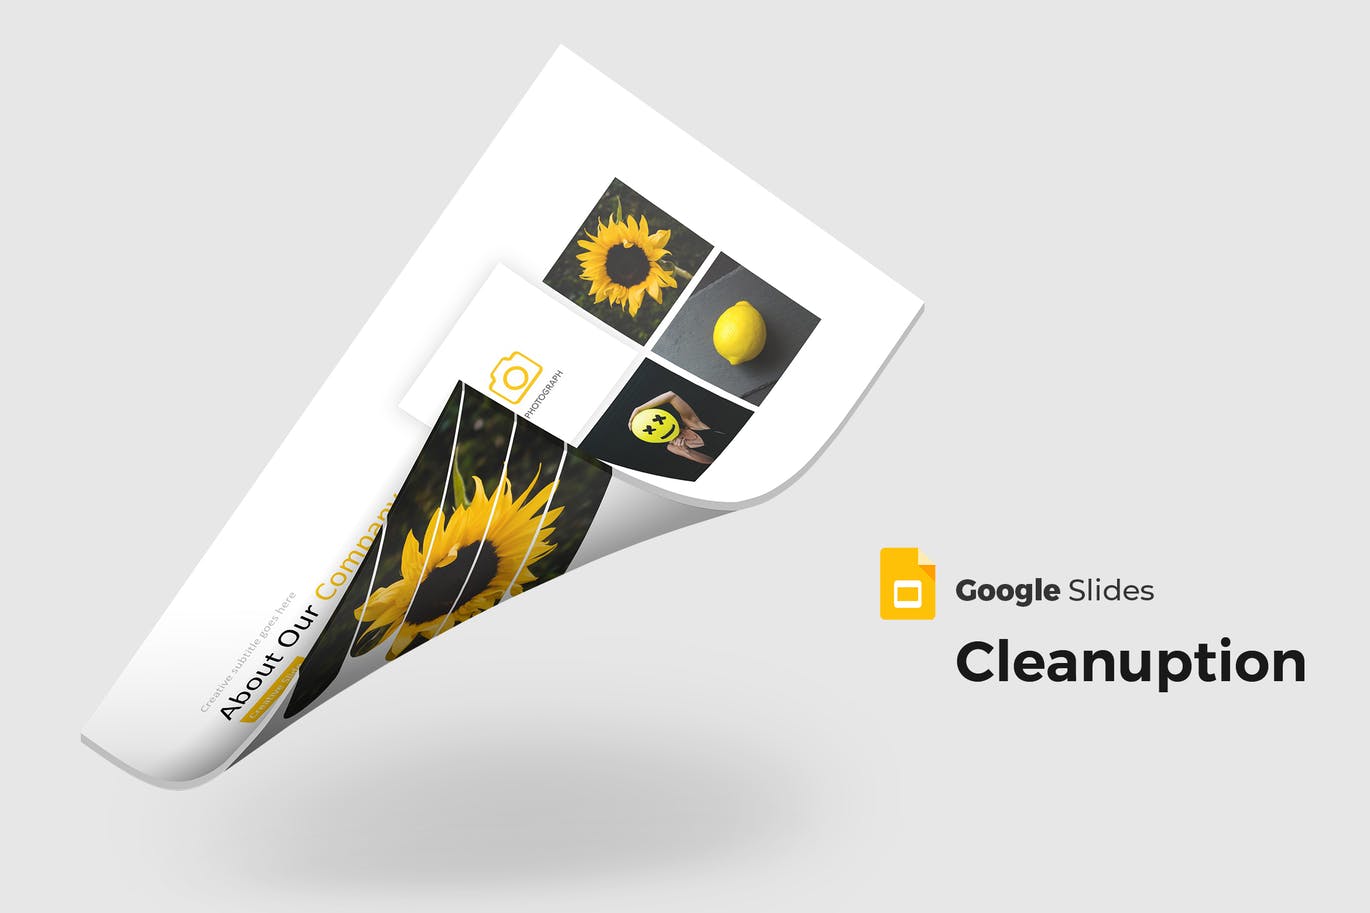 谷歌幻灯片摄影作品展示模板下载 Cleanuption – Google Slides Template设计素材模板